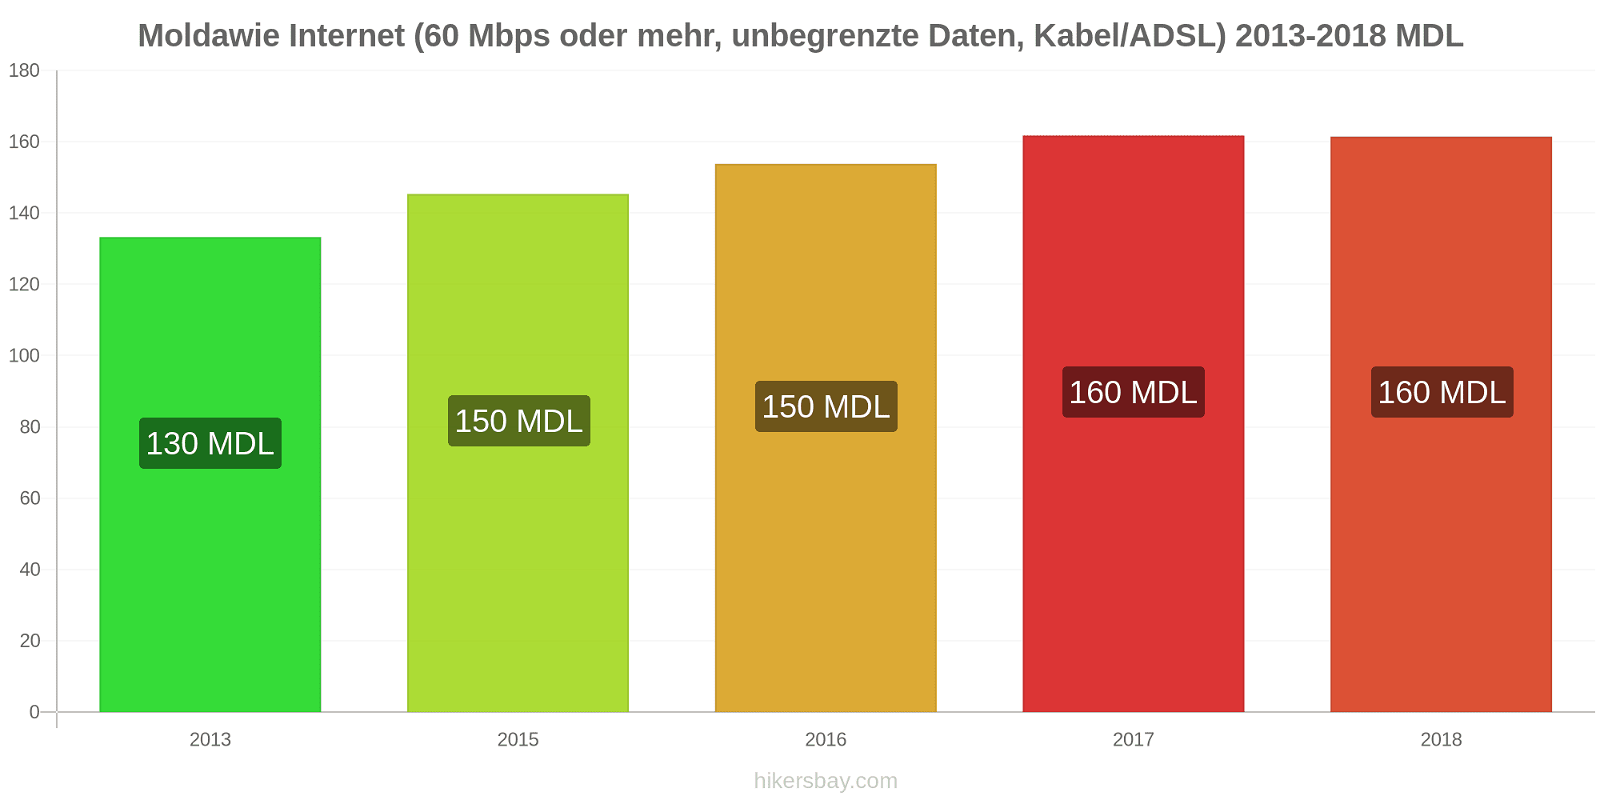 Moldawie Preisänderungen Internet (60 Mbps oder mehr, unbegrenzte Daten, Kabel/ADSL) hikersbay.com